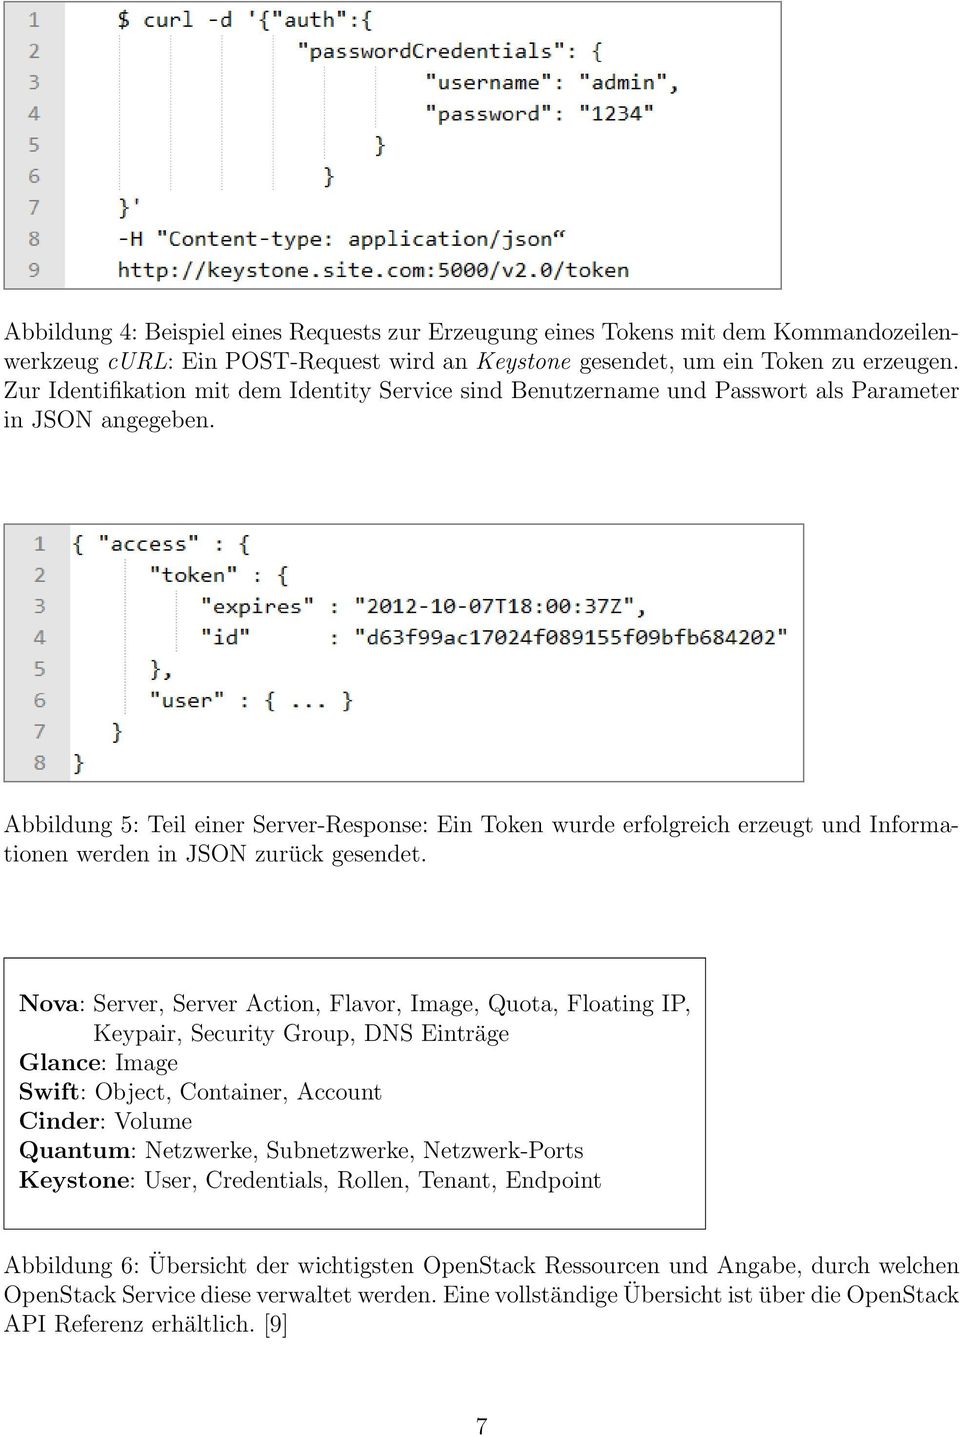 Abbildung 5: Teil einer Server-Response: Ein Token wurde erfolgreich erzeugt und Informationen werden in JSON zurück gesendet.